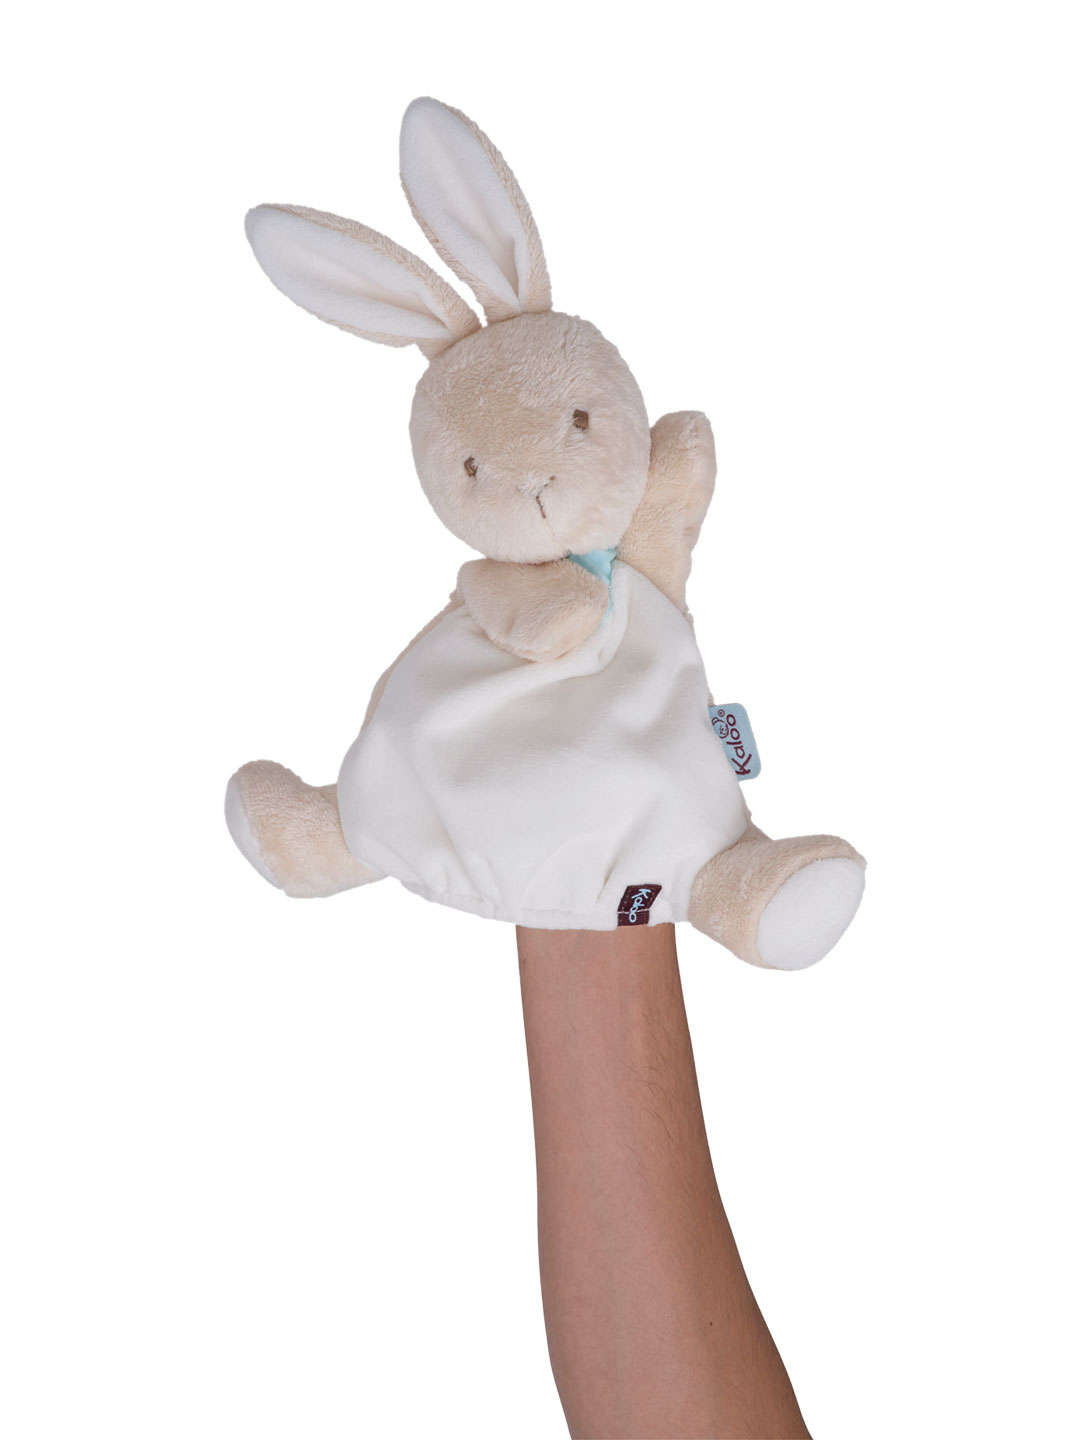 Мягкая игрушка из серии Друзья - Заяц комфортер, кукла на руку 30 см  